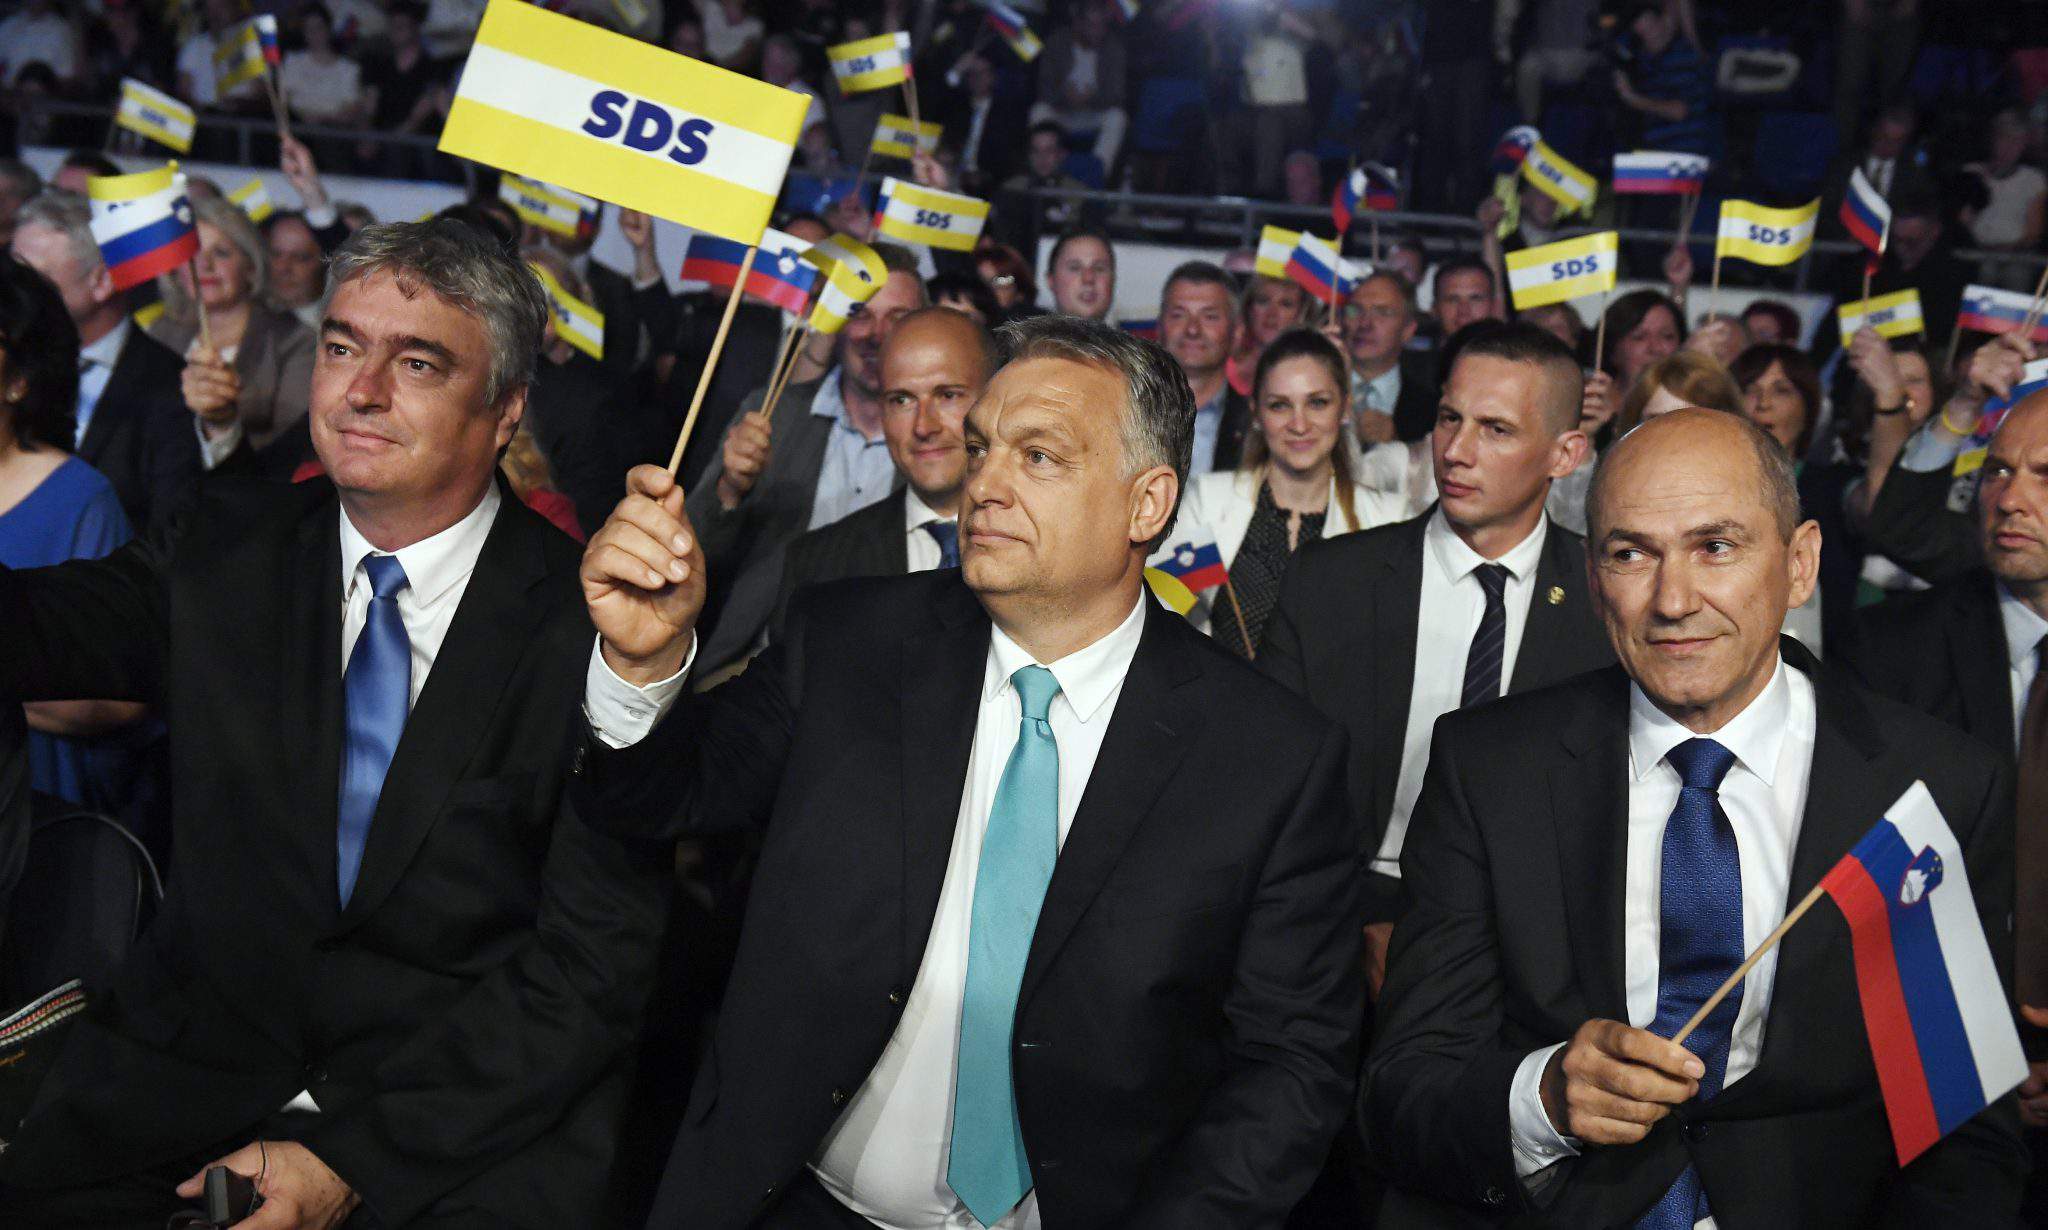 Orbán Slovenia Celje SDS